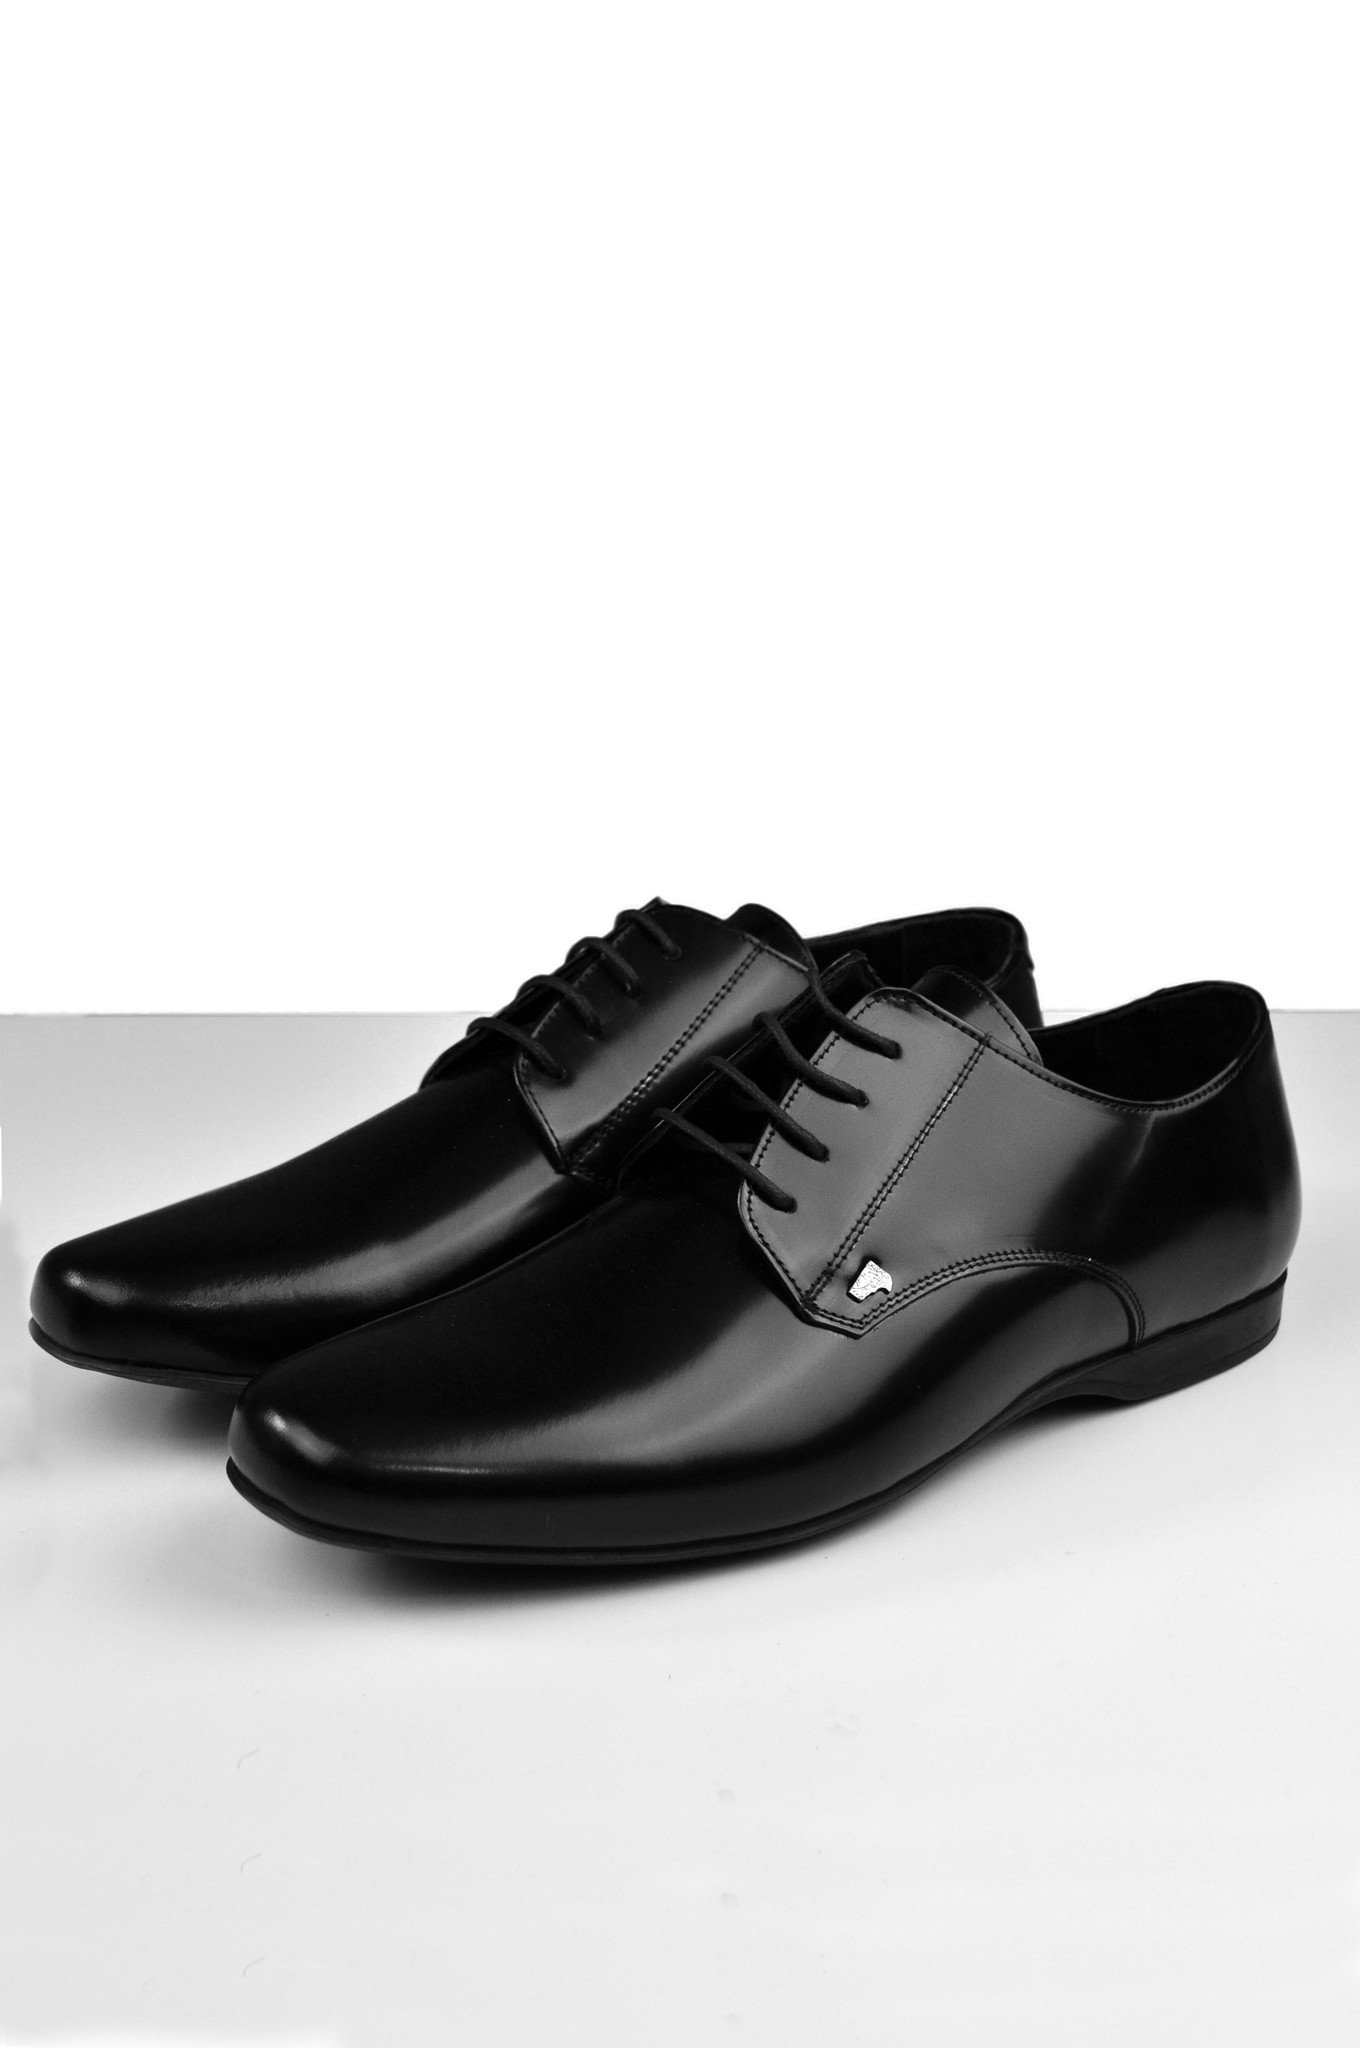 shiny black shoes